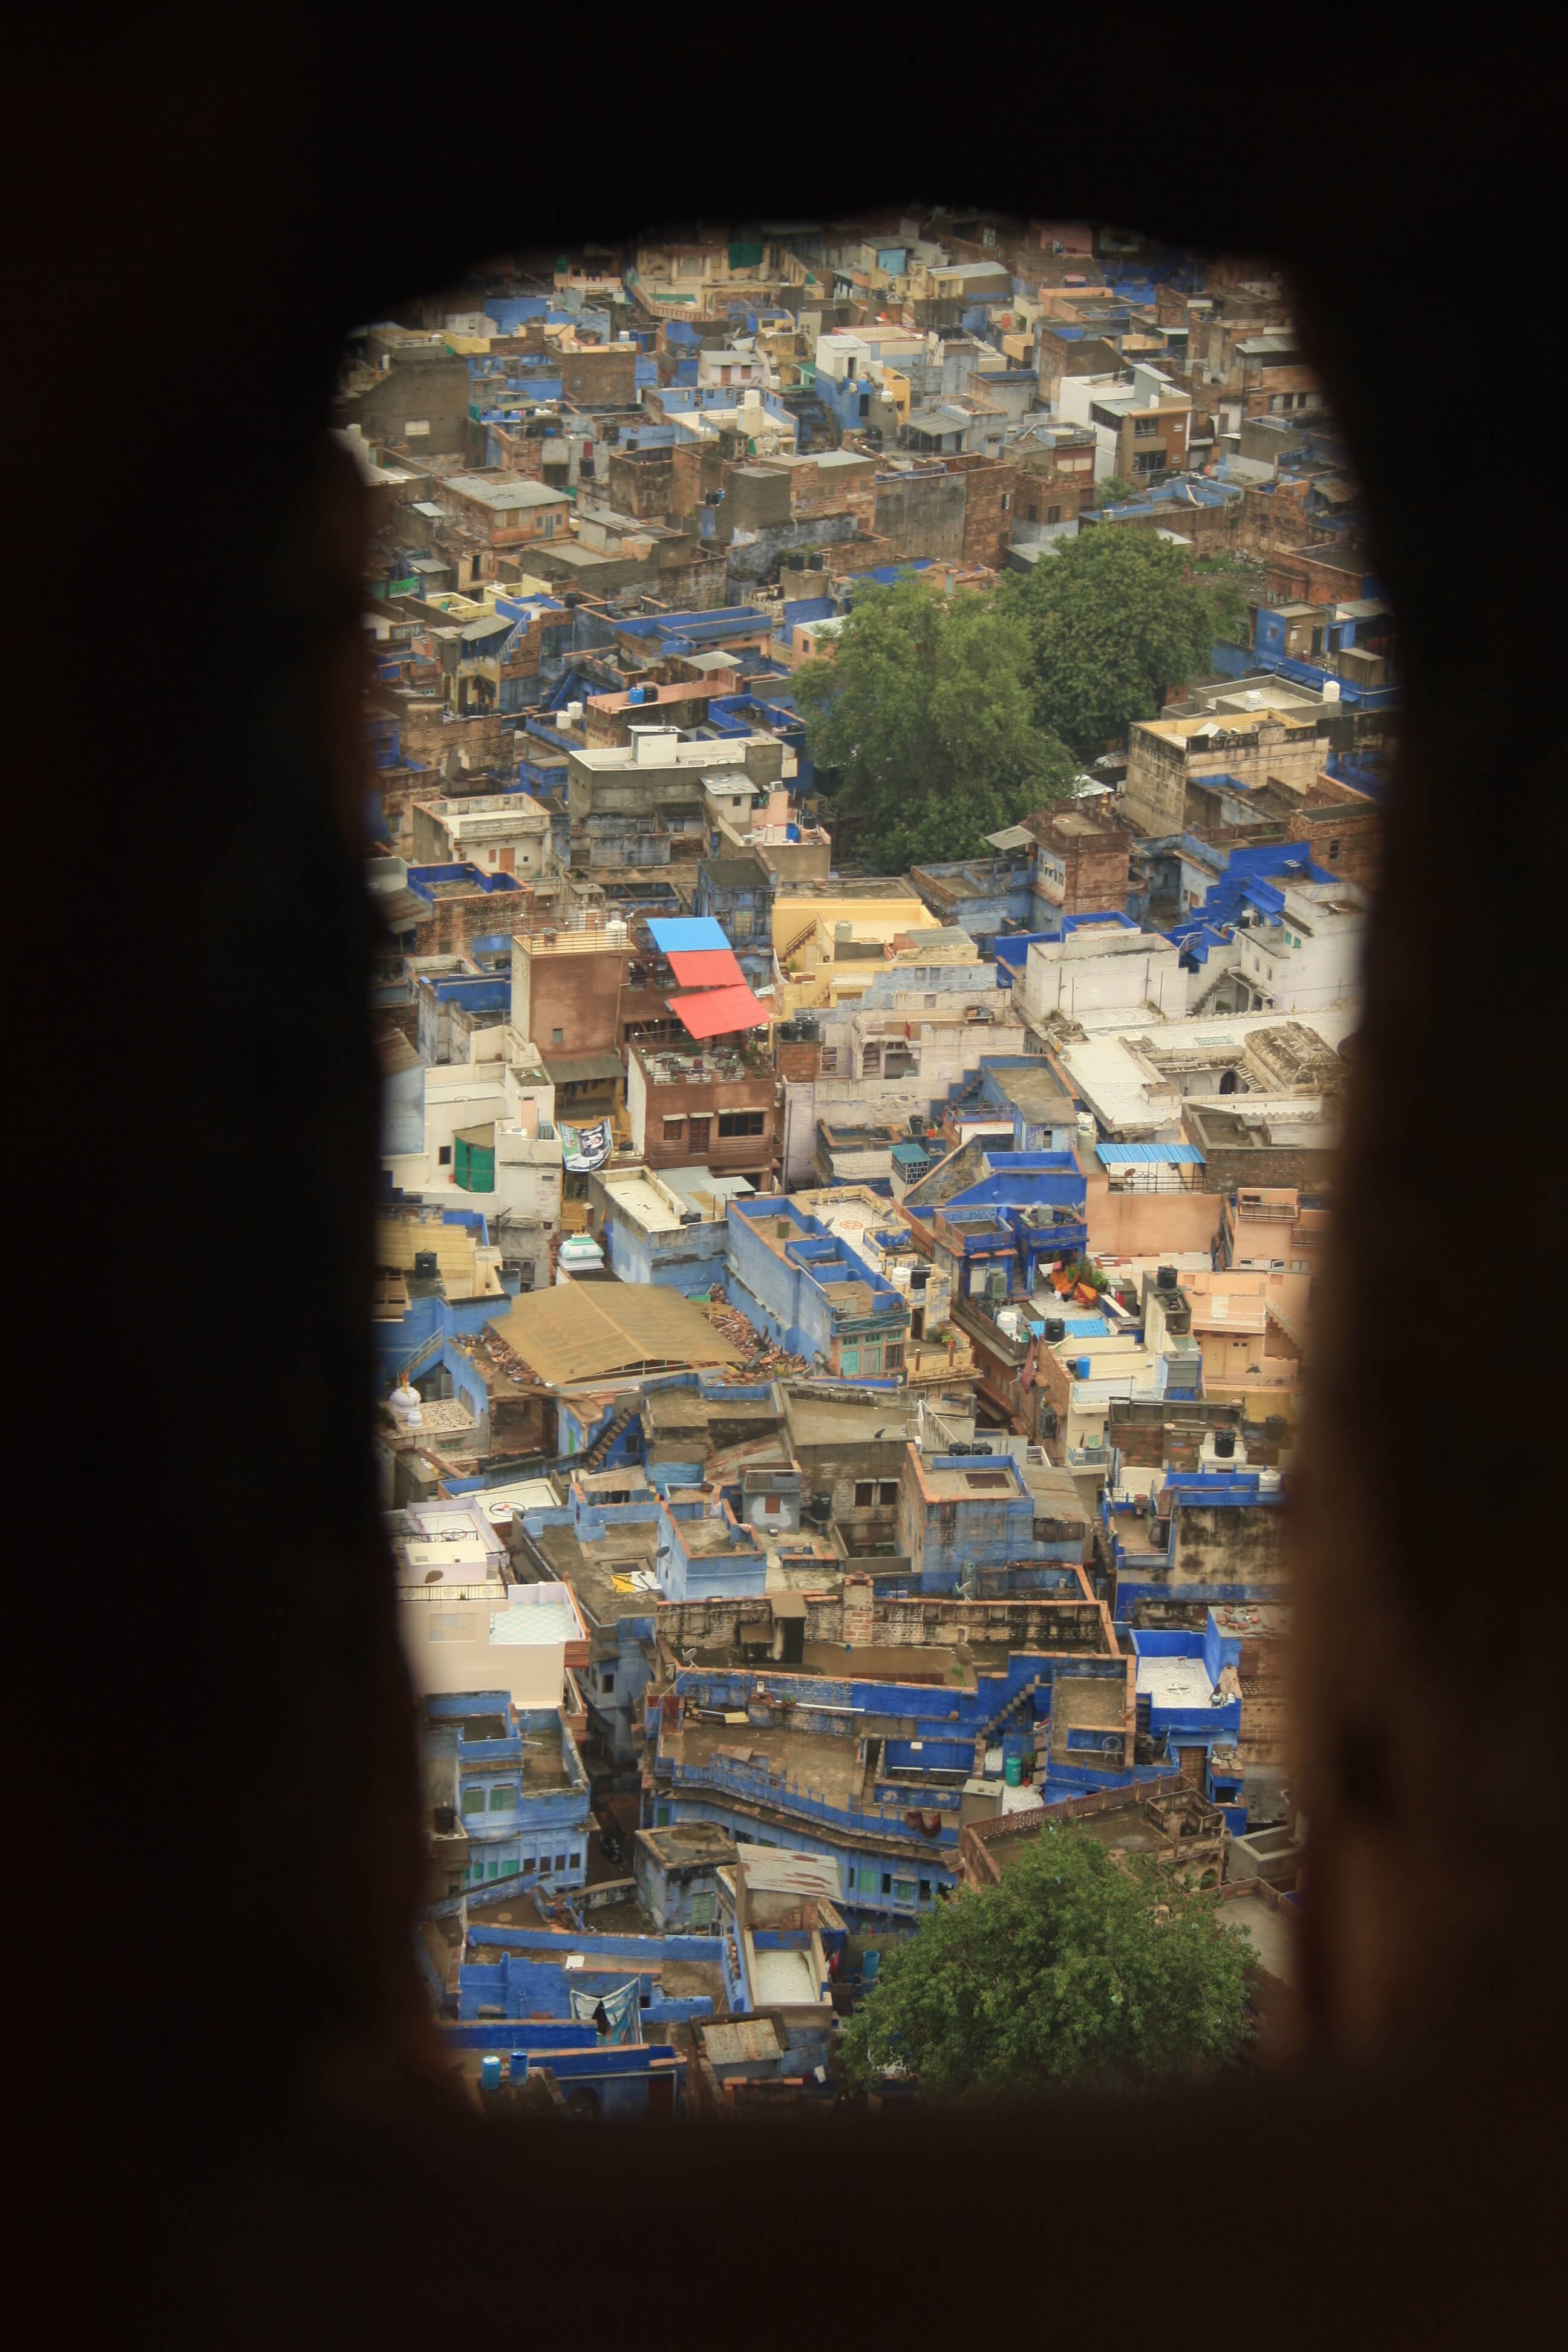 La città blu del Rajasthan: Jodhpur 